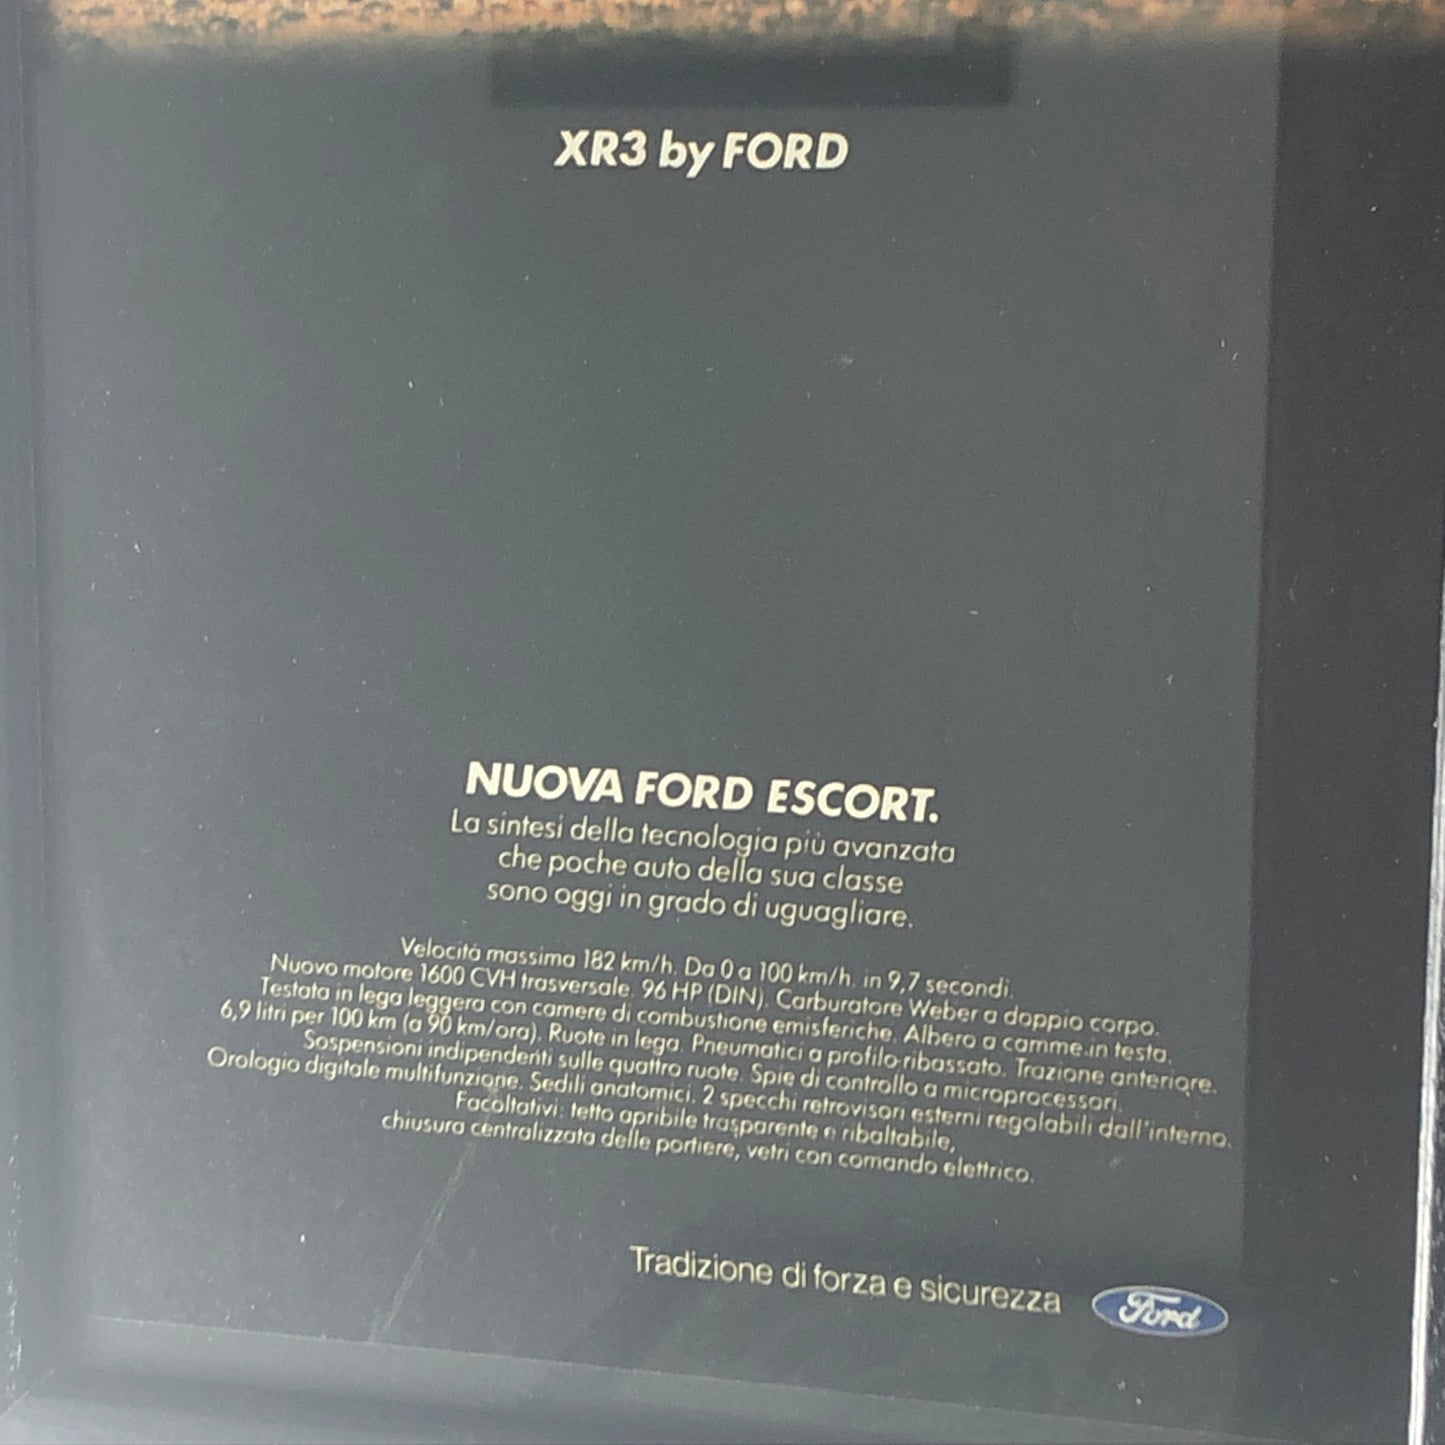 Ford, Pubblicità Anno 1981 Nuova Ford Escort XR3